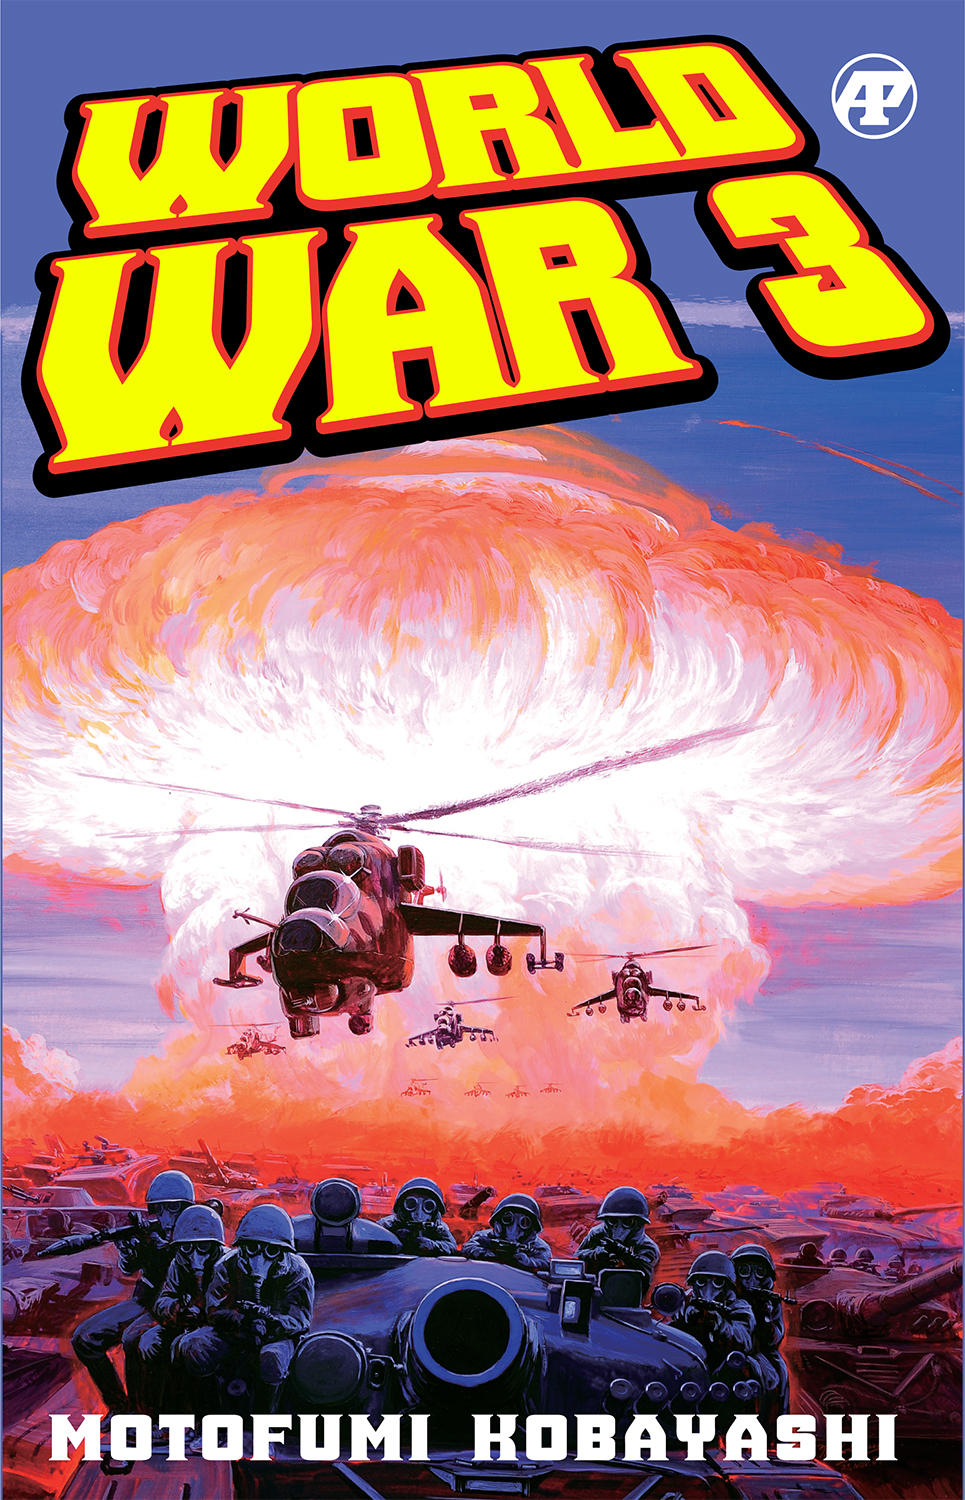 World War 3 Graphic Novel